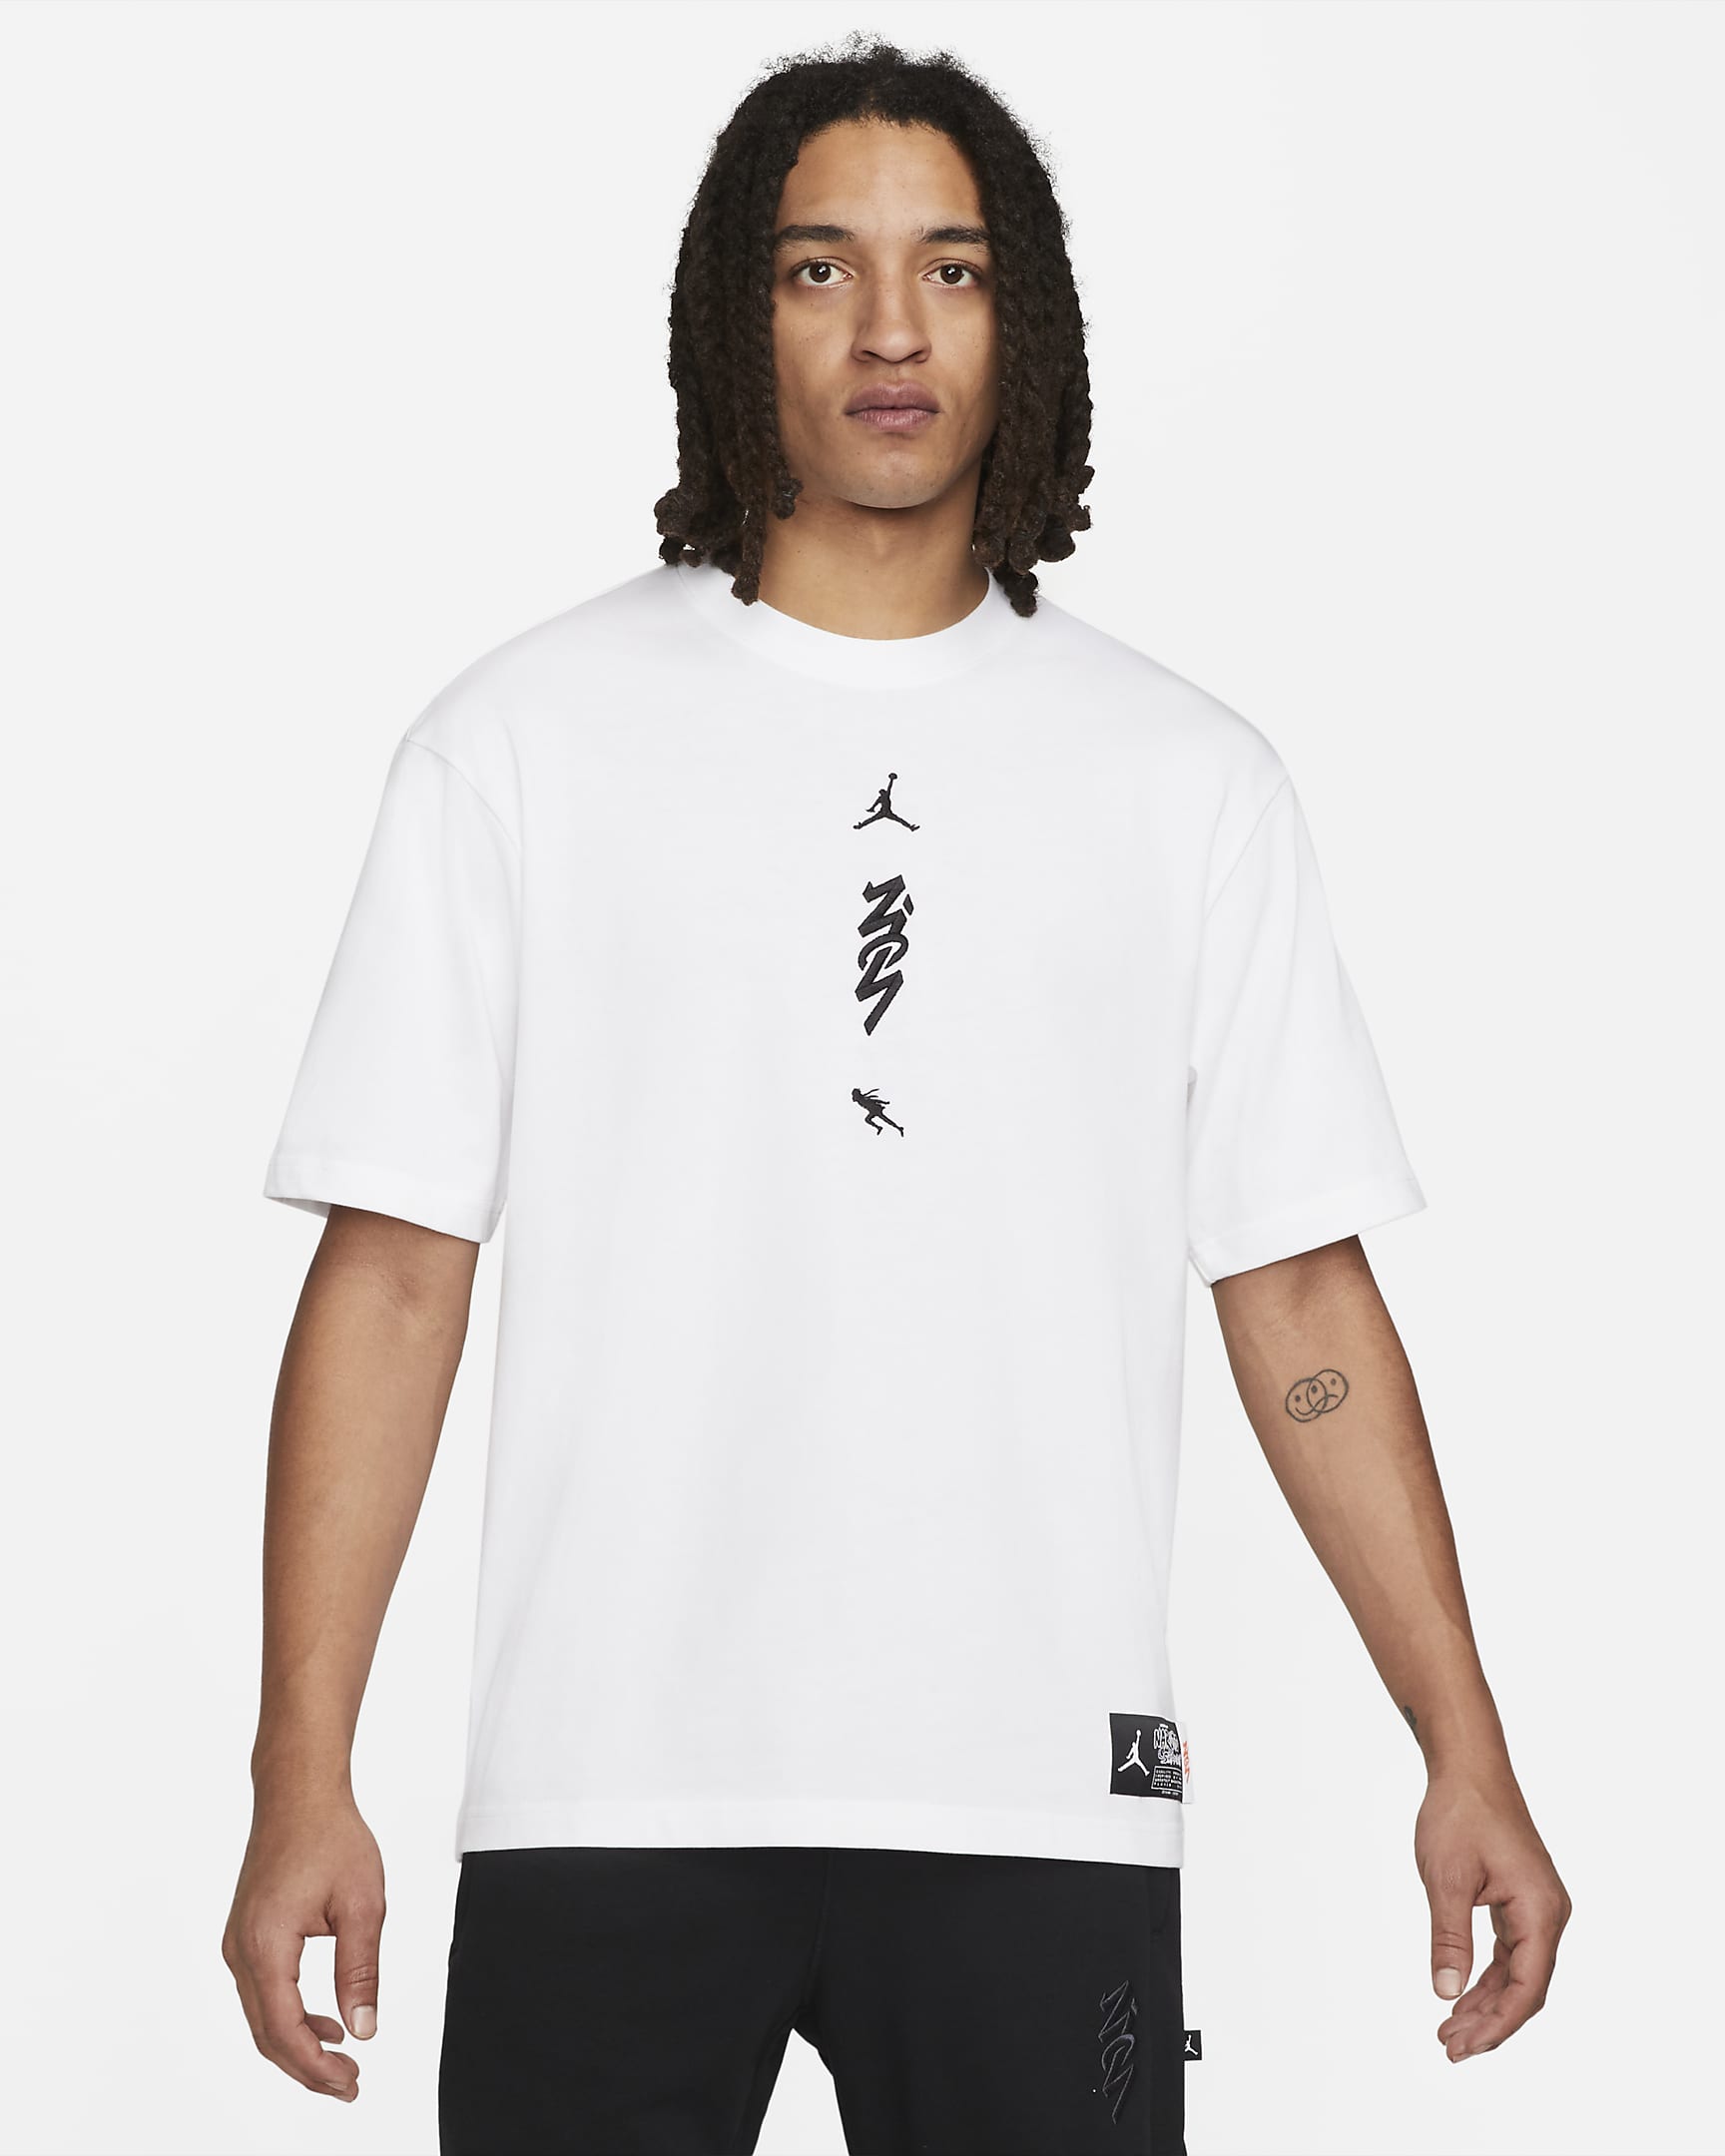 Zion x Naruto Men's T-shirt. Nike MY